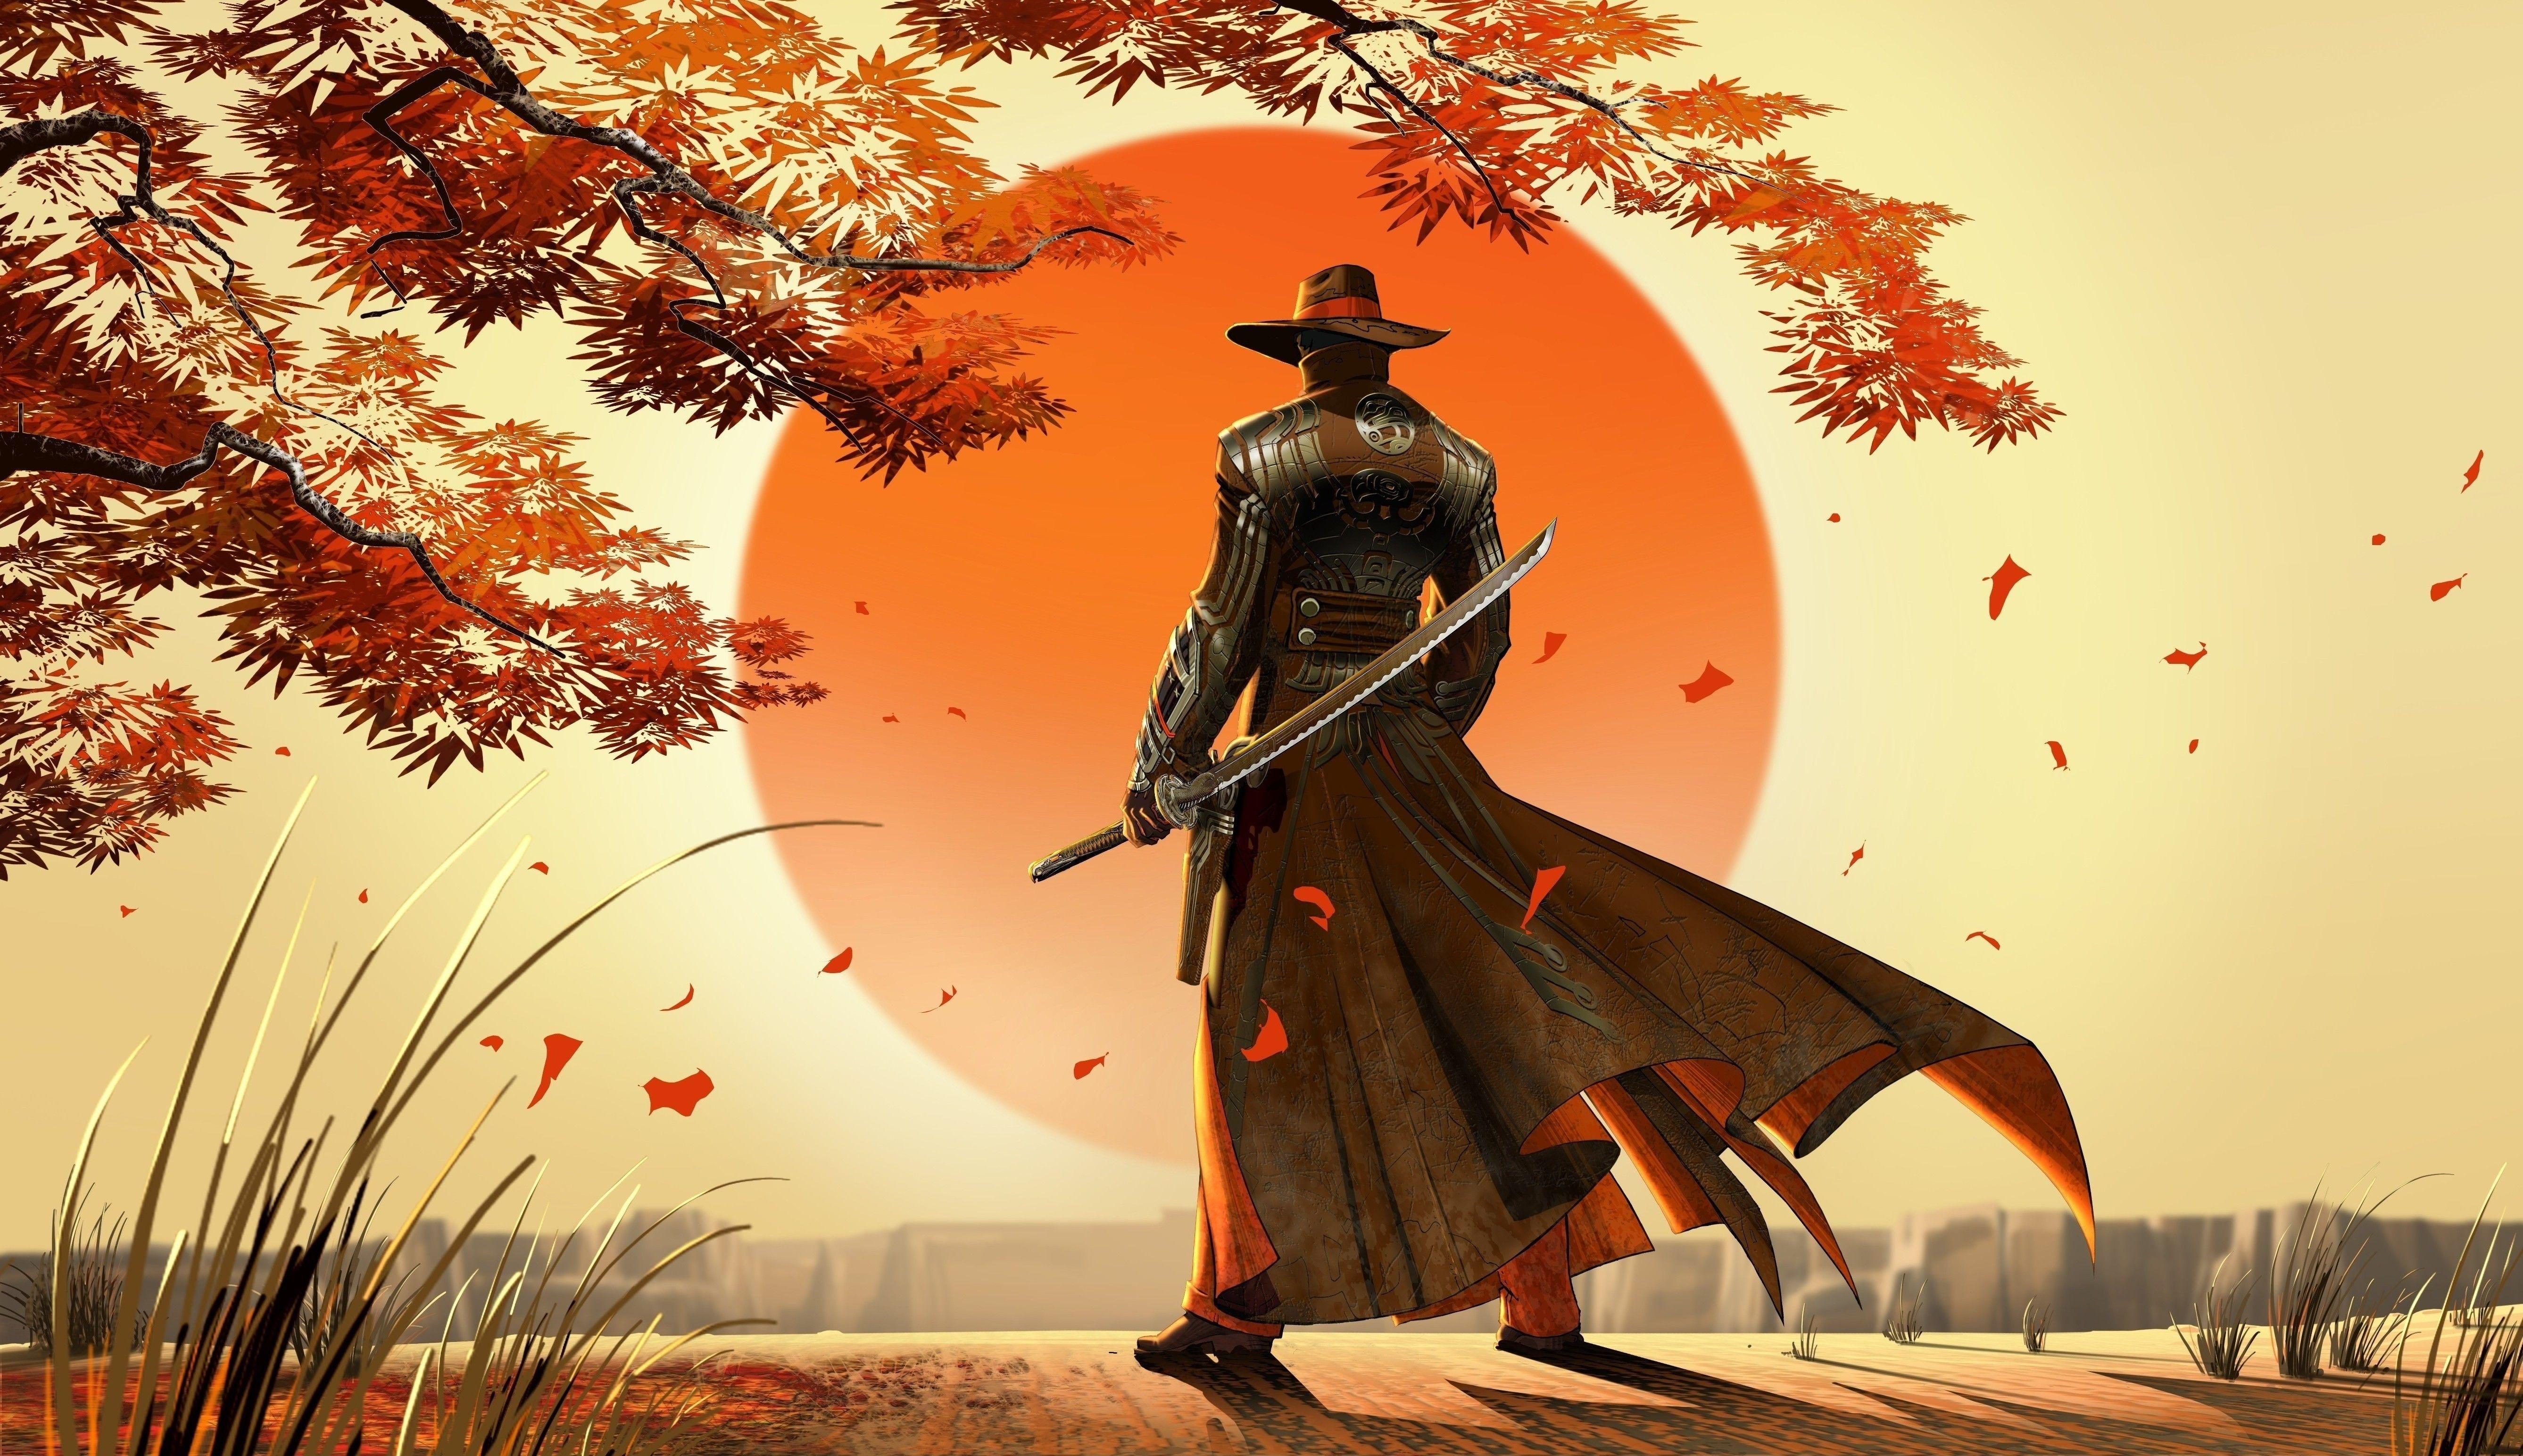 Japan Art Samurai Wallpapers - Top Free Japan Art Samurai ...